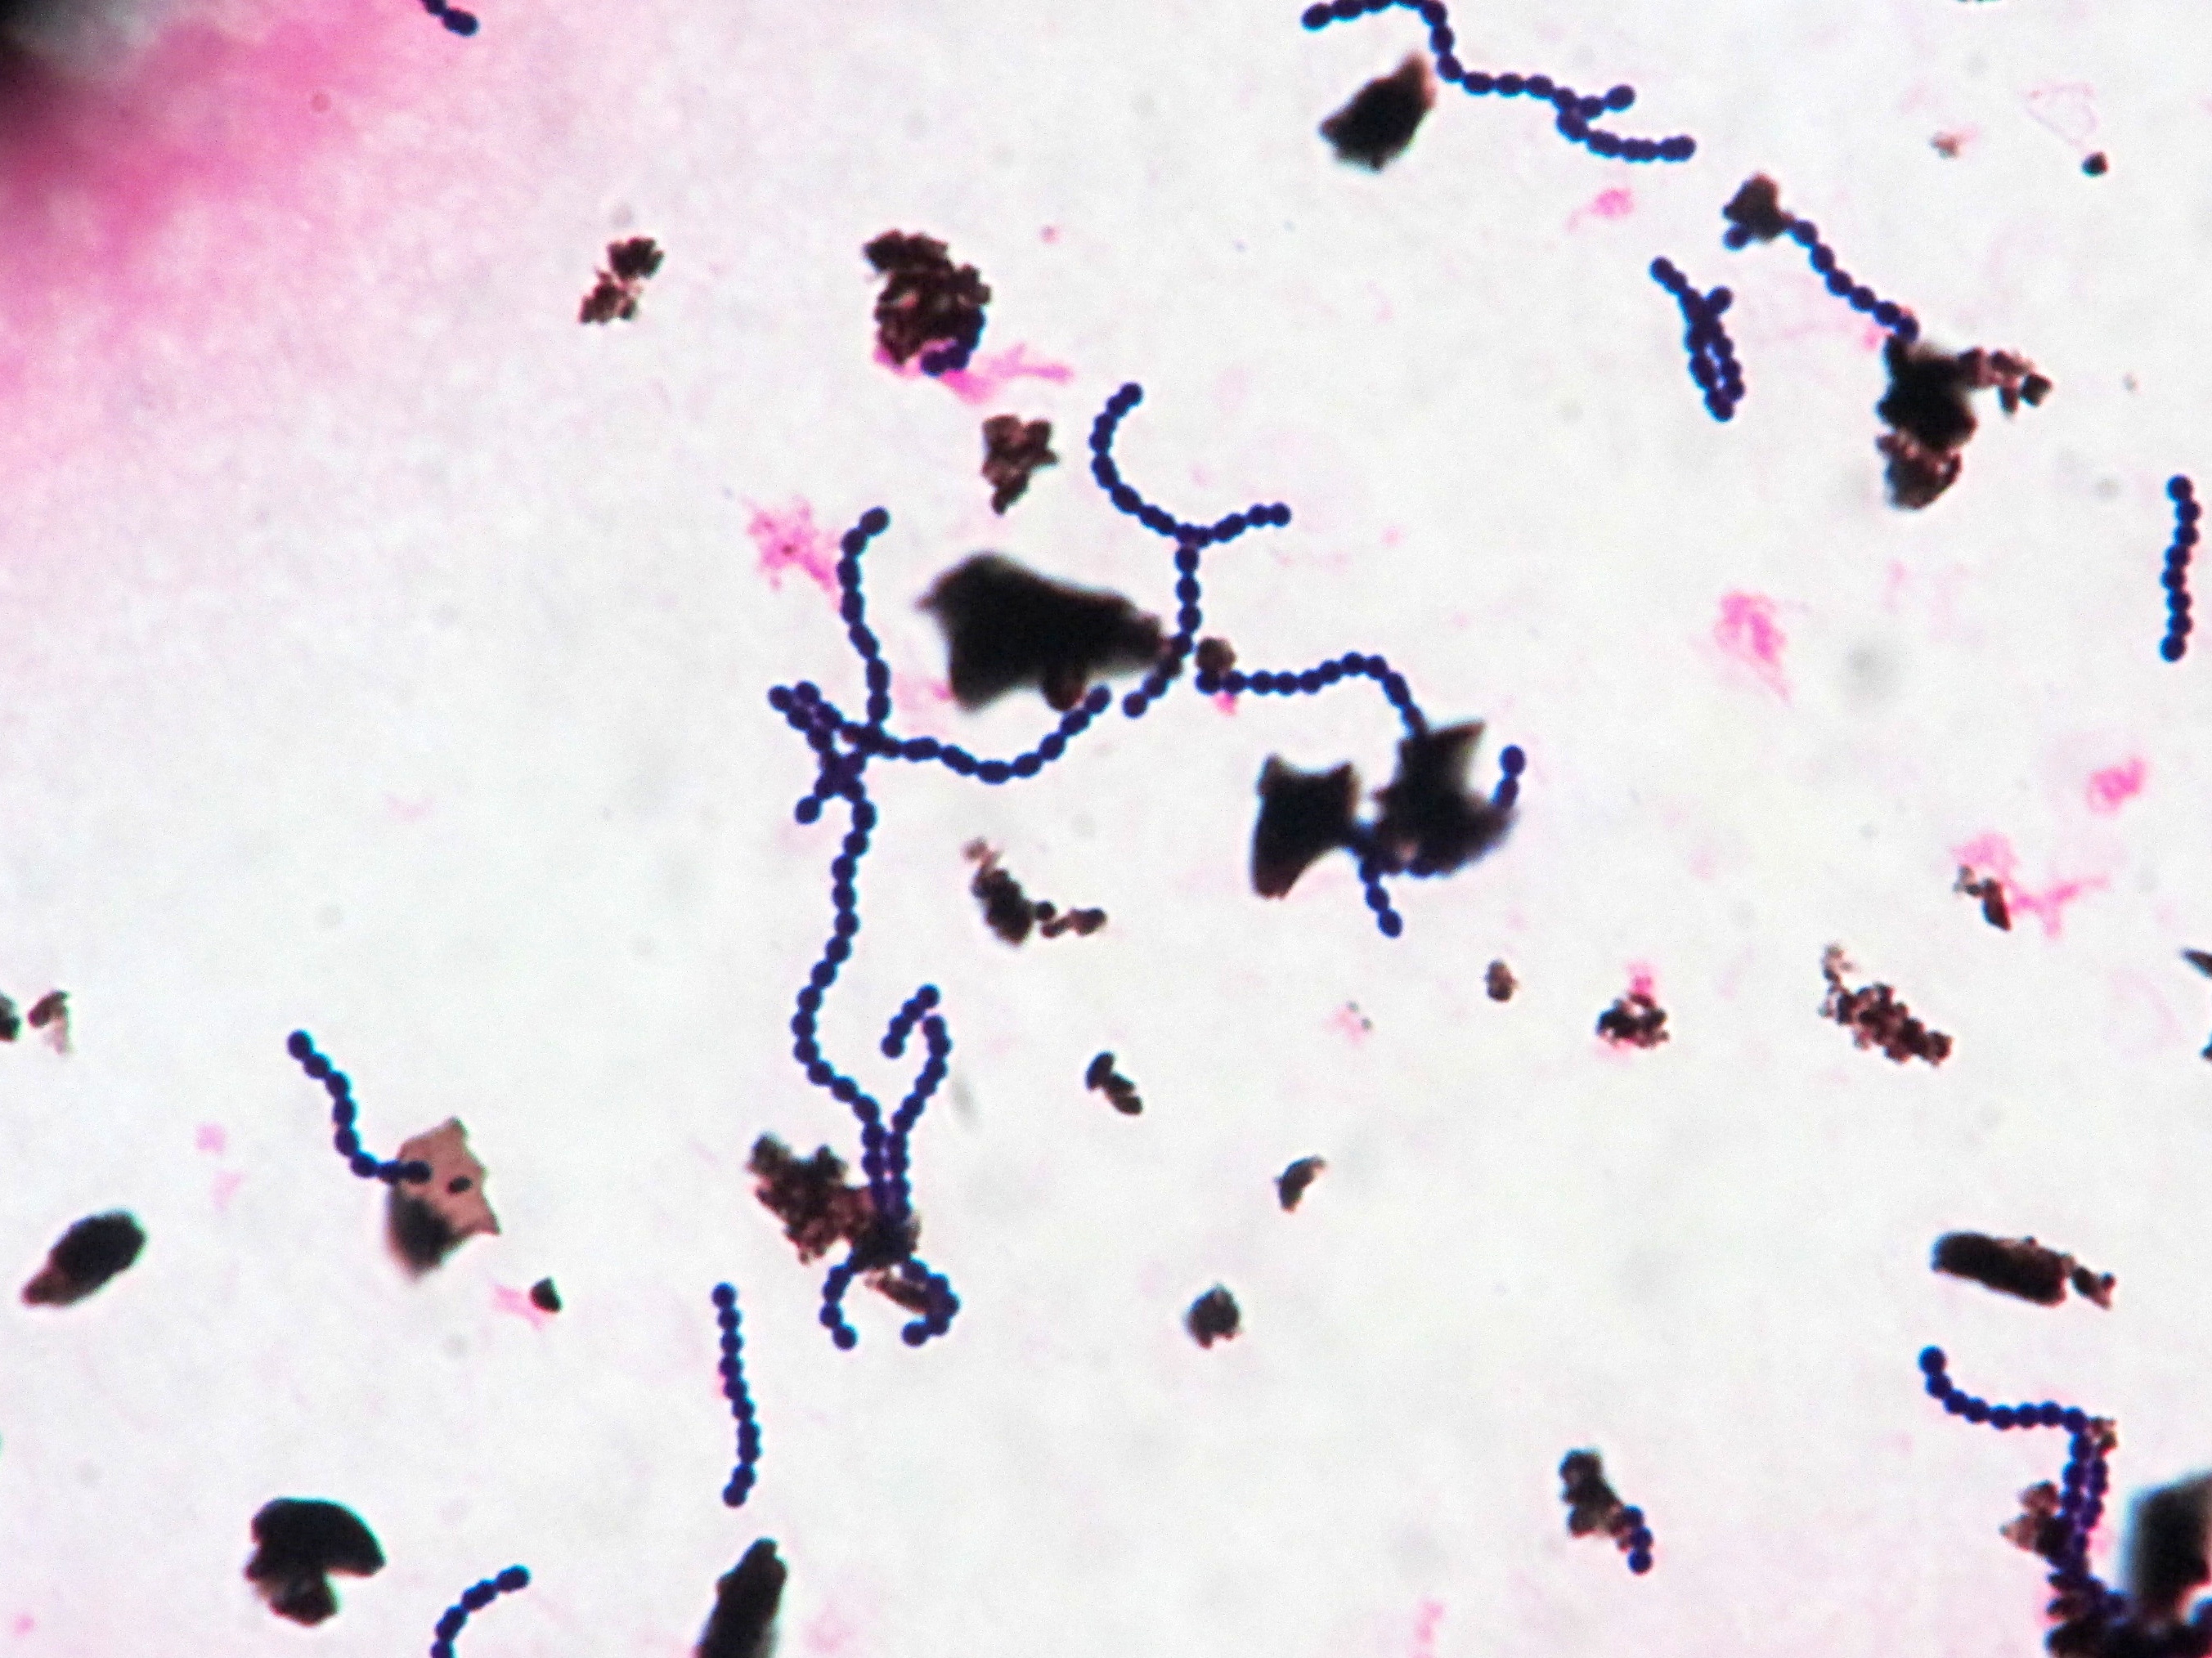 Streptococcus dysagalactiae